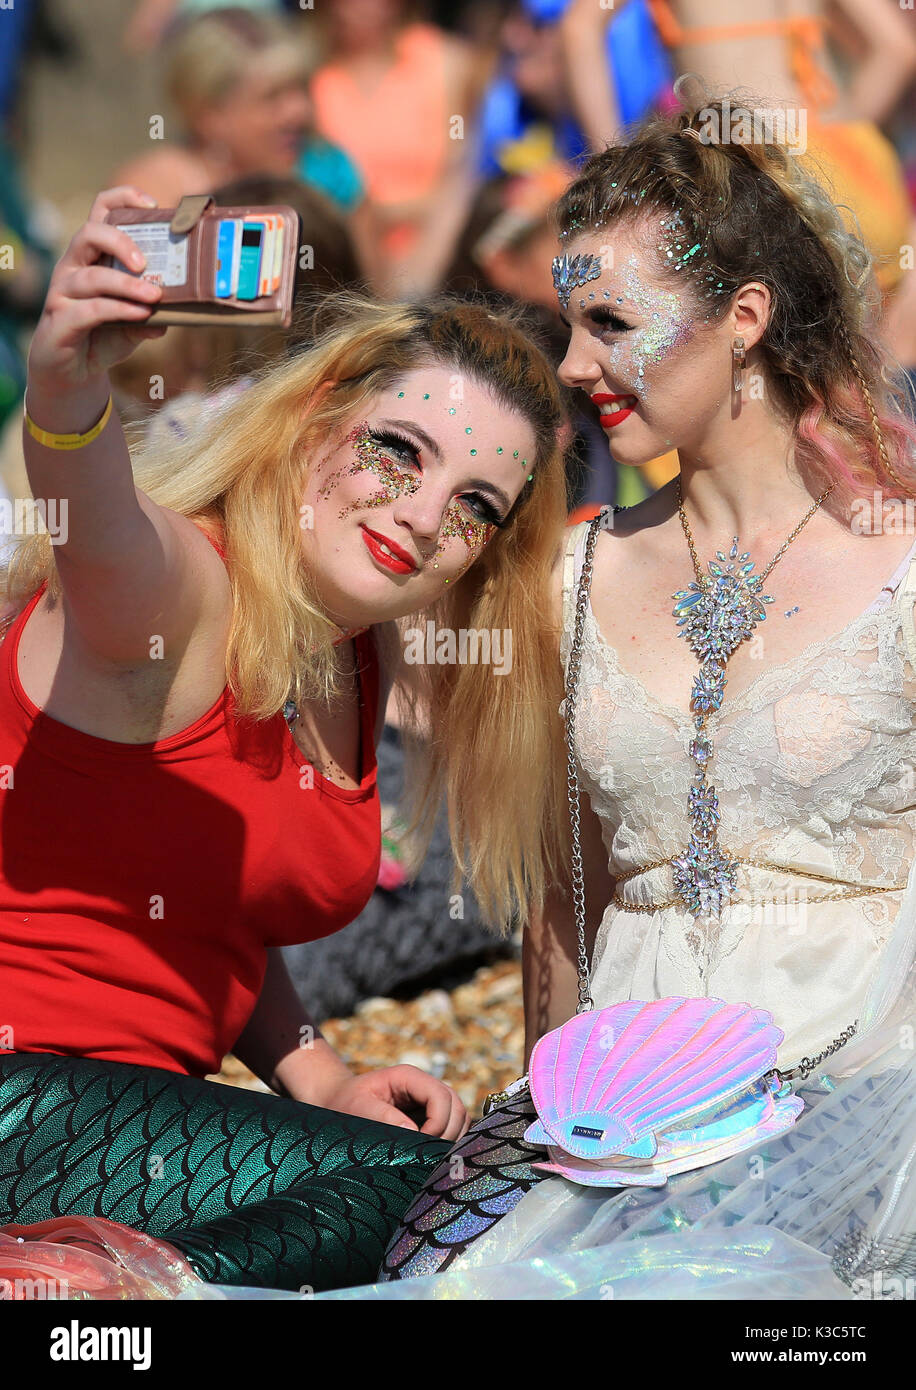 Teilnehmer gekleidet wie Meerjungfrauen in Bexhill-on-Sea, East Sussex, für einen Guinness Weltrekord Versuch der größte Versammlung von Meerjungfrauen in einem Platz, während der jährlichen Festival des Meeres in der Stadt. Bild Datum: Samstag, September 2, 2017. Photo Credit: Gareth Fuller/PA-Kabel Stockfoto